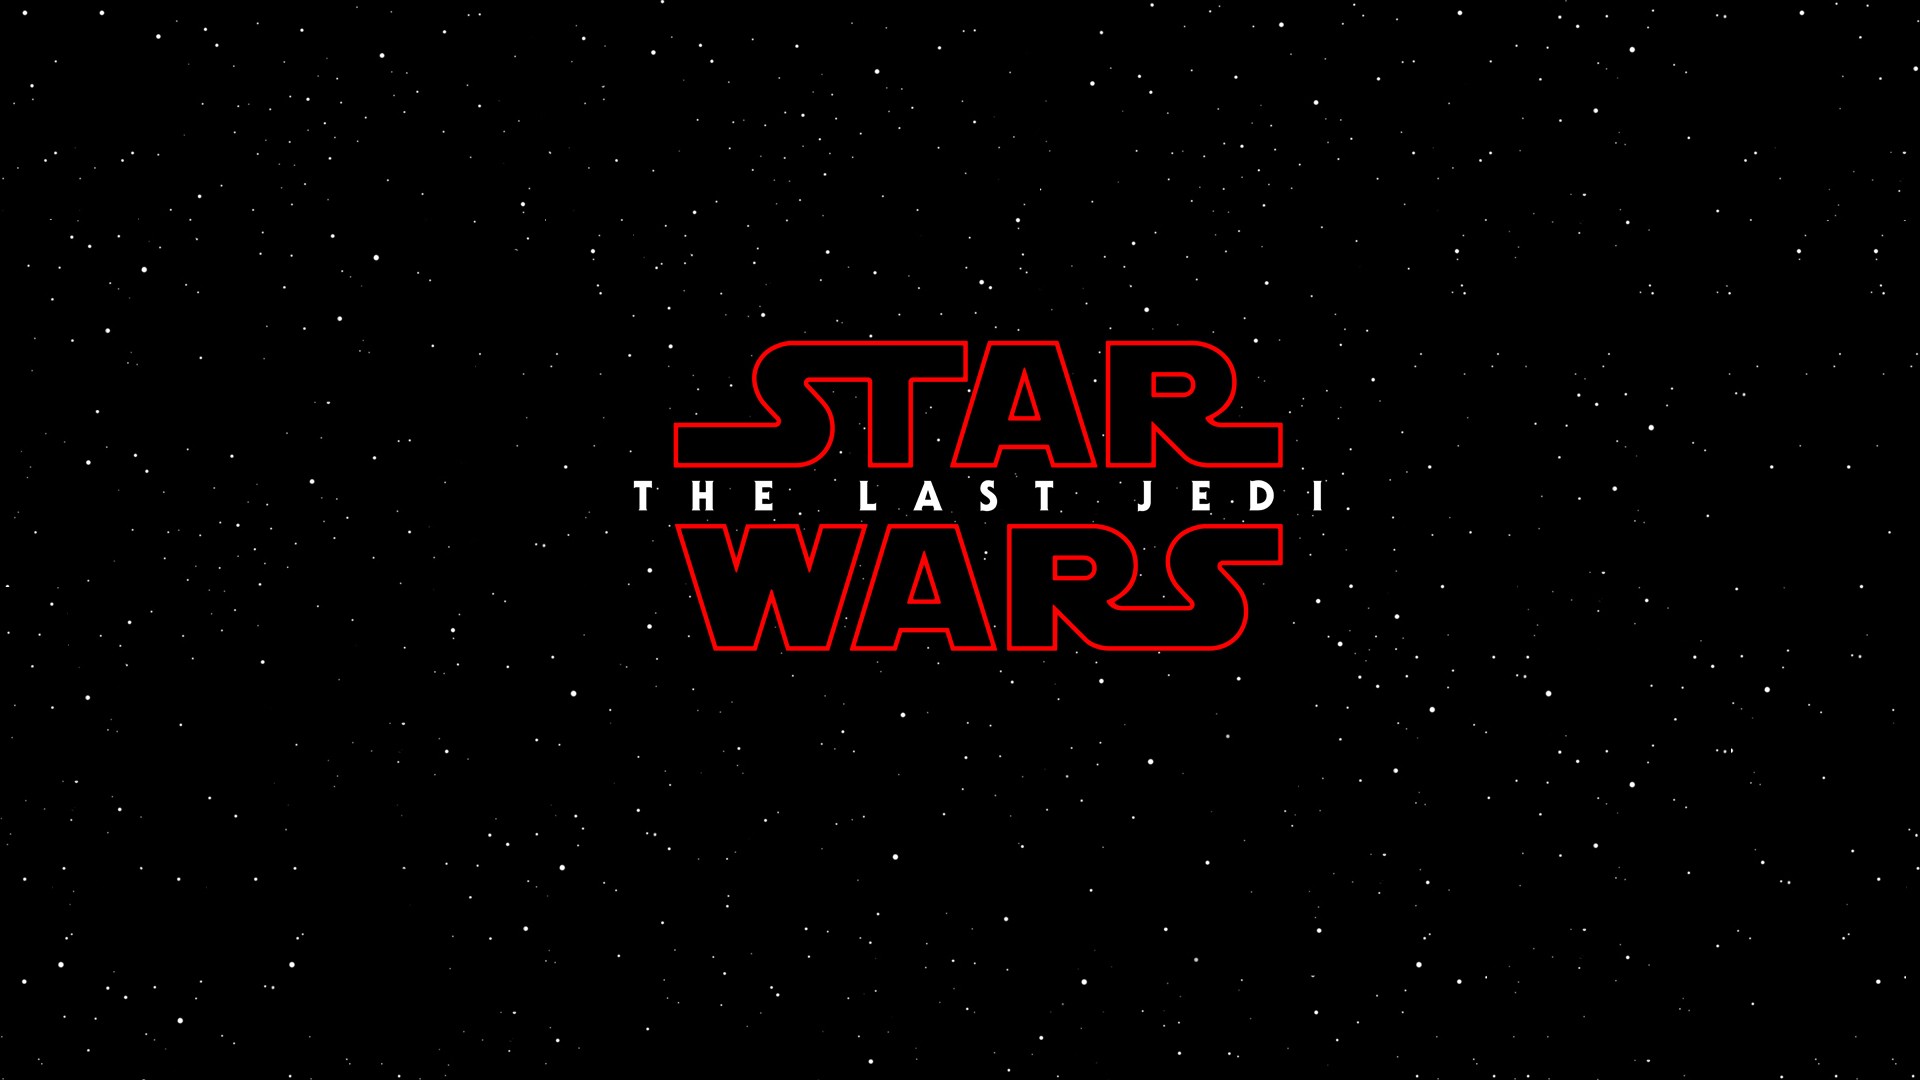 Star Wars, Star Wars: The Last Jedi Wallpaper